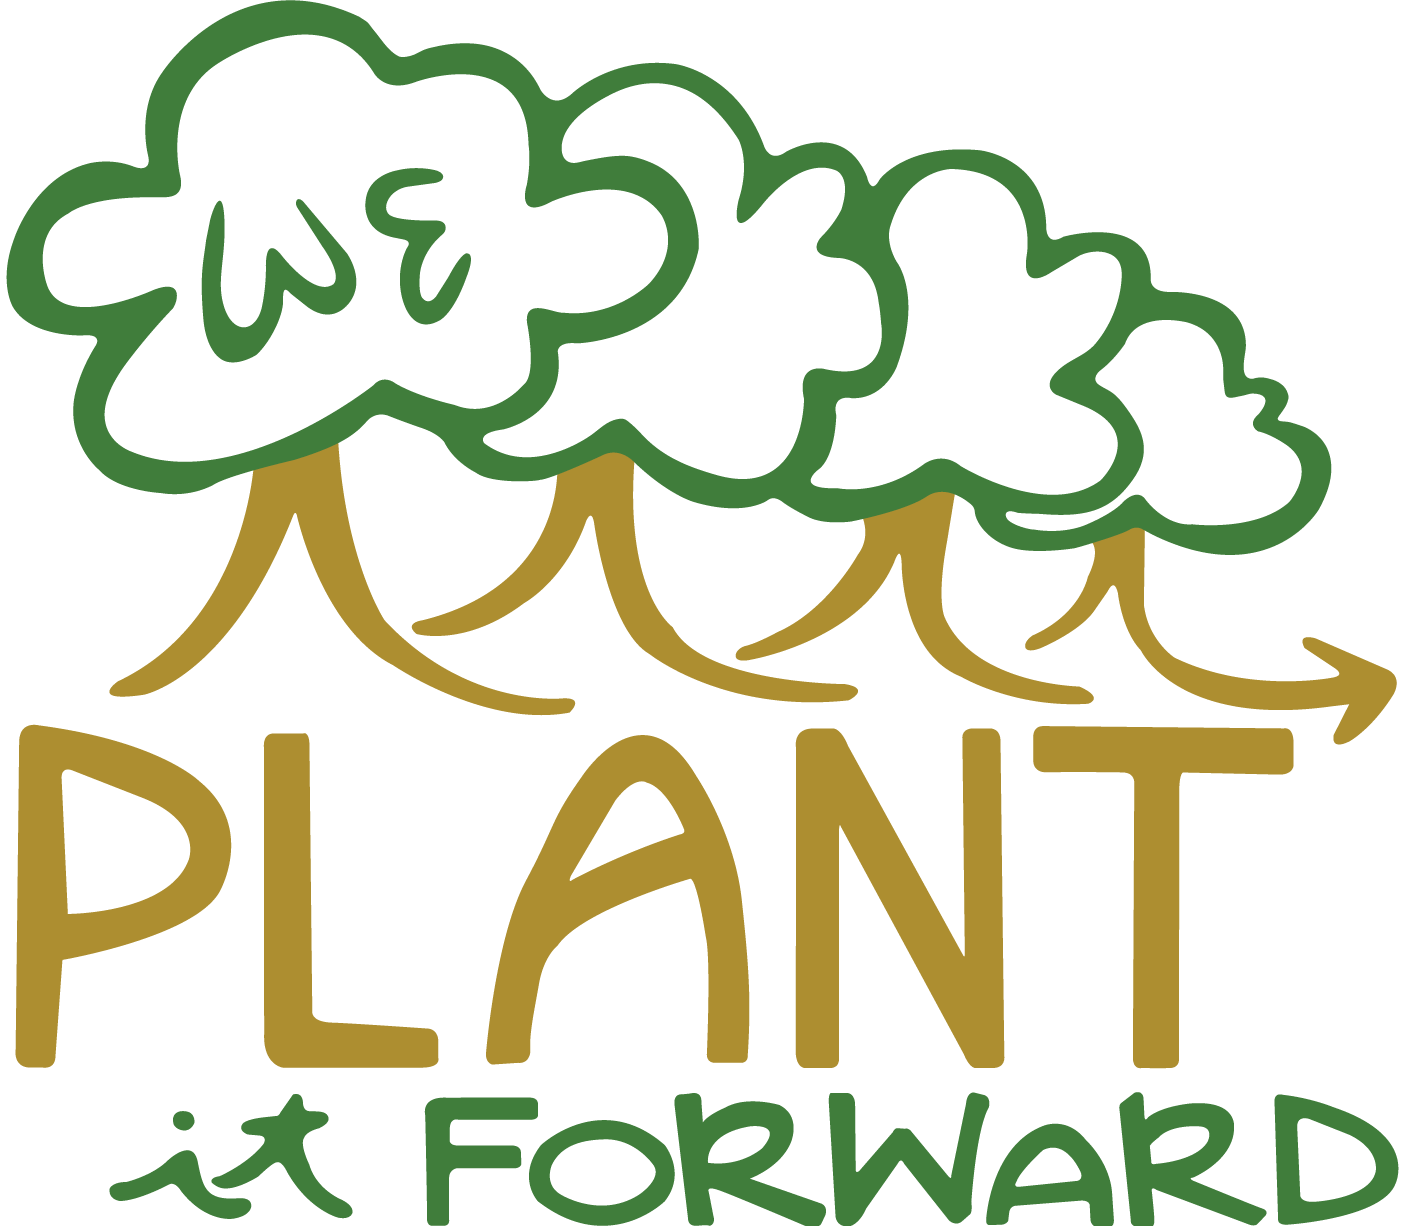 We Plant it Forward